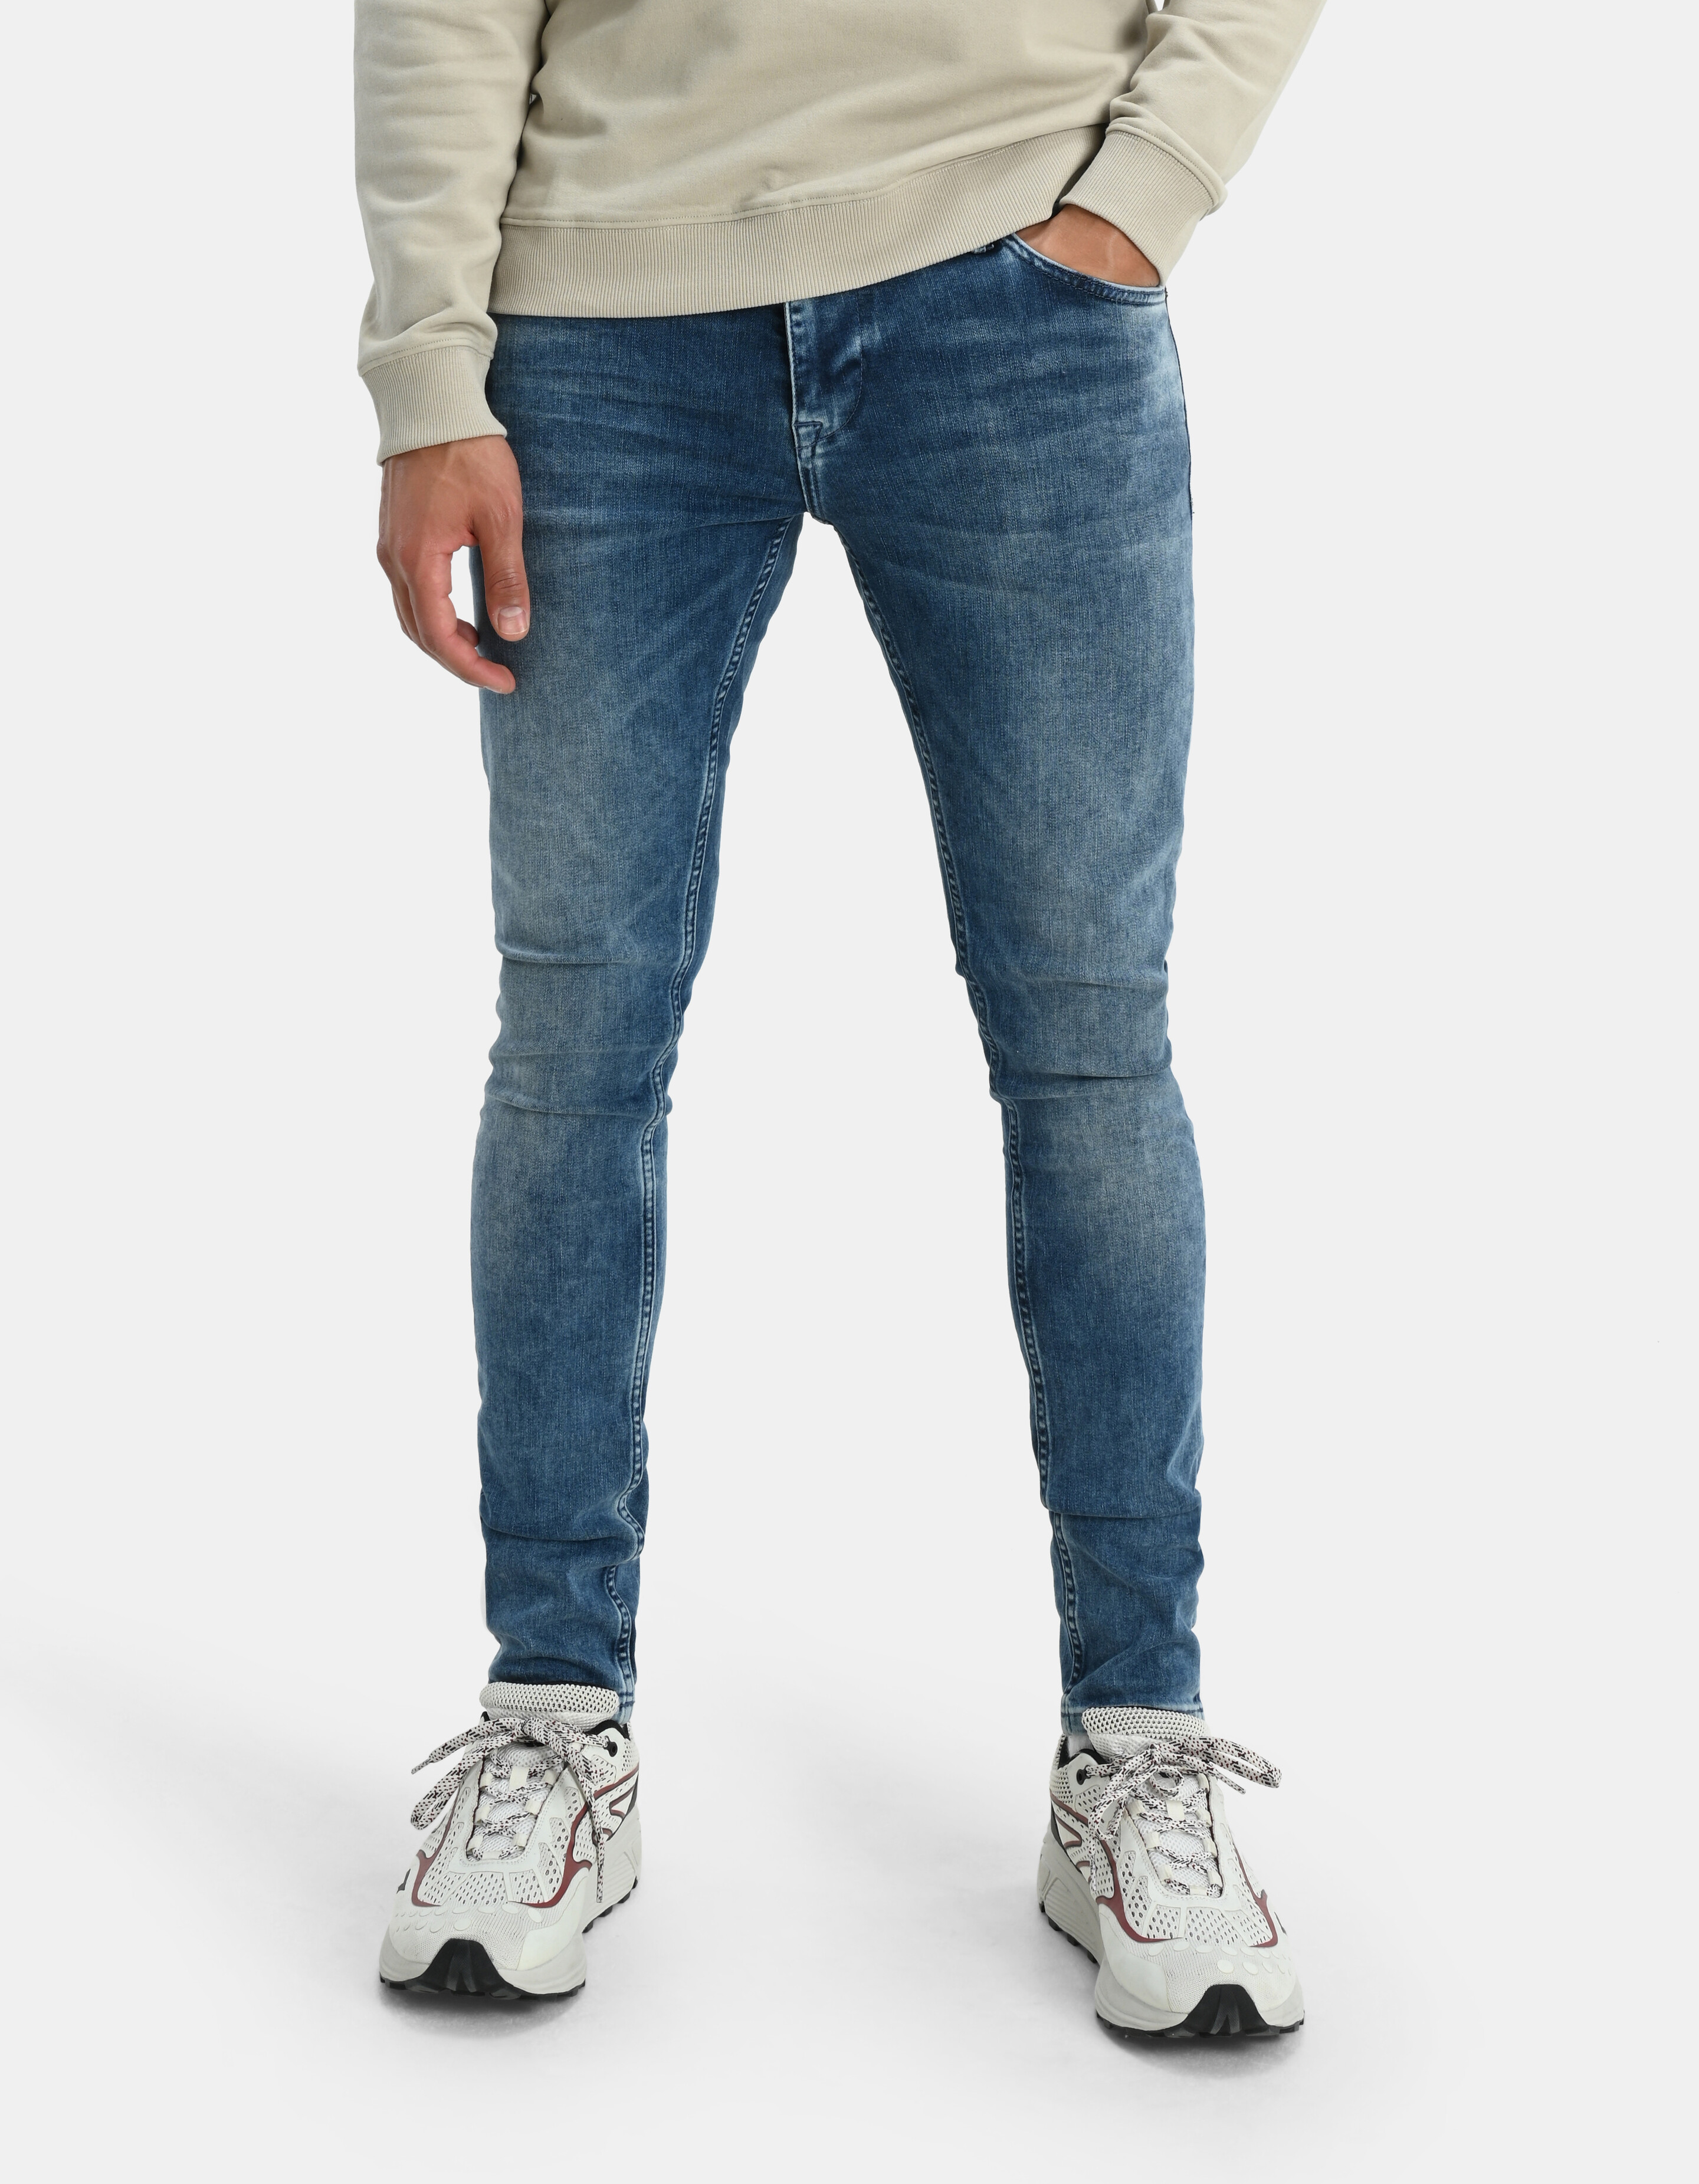 Skinny Jeans Blau Länge 34 Refill